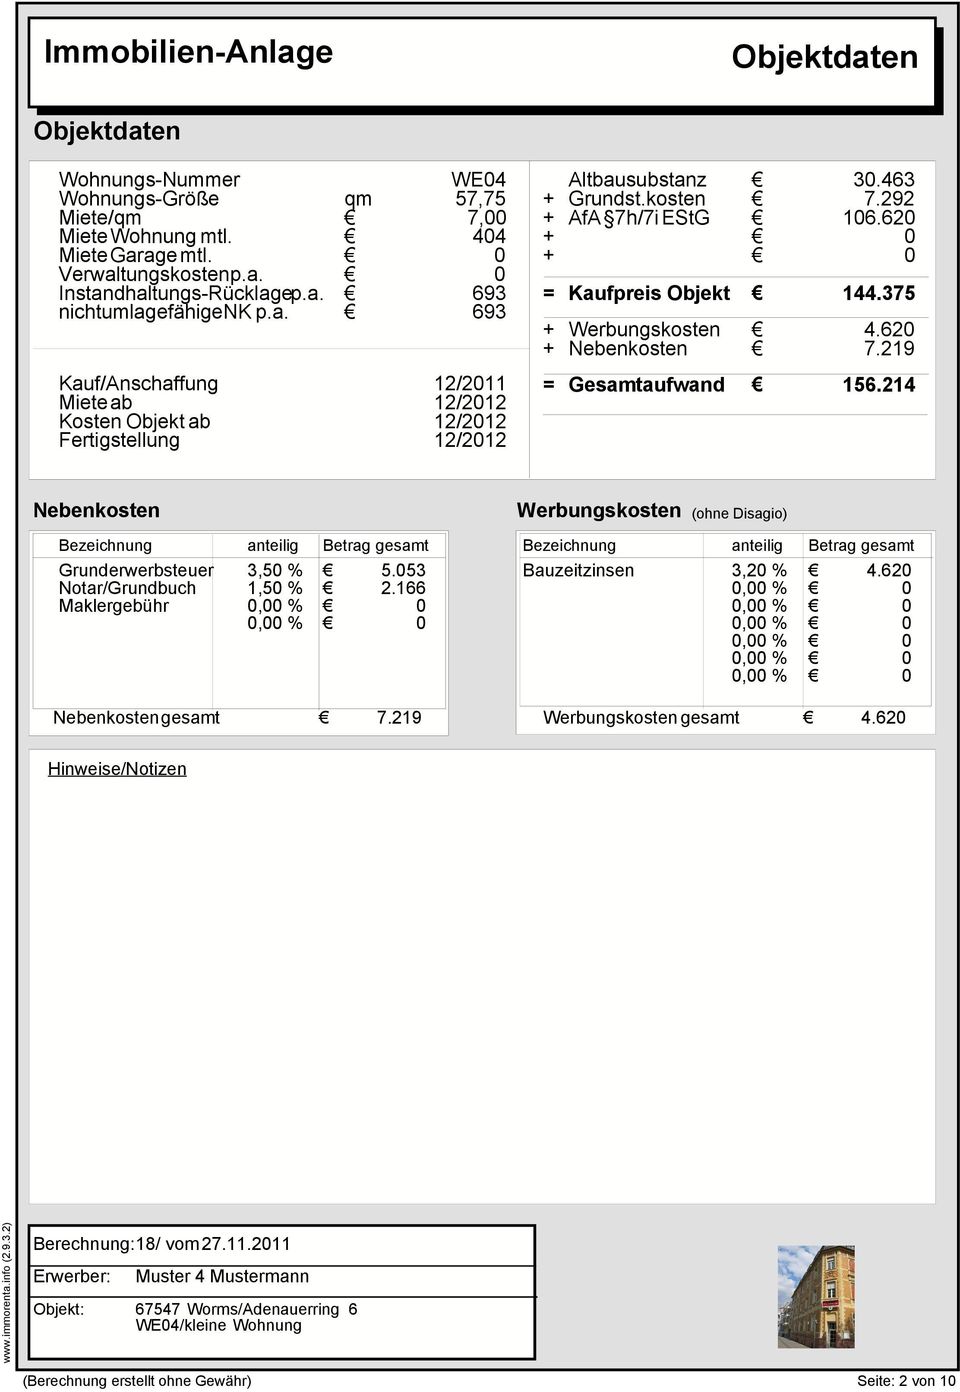 24 Werbungskosten (ohne Disagio) Bezeichnung anteilig Betrag gesamt Bezeichnung anteilig Betrag gesamt Grunderwerbsteuer Notar/Grundbuch Maklergebühr 3,5 %,5 %, %, % 5.53 2.